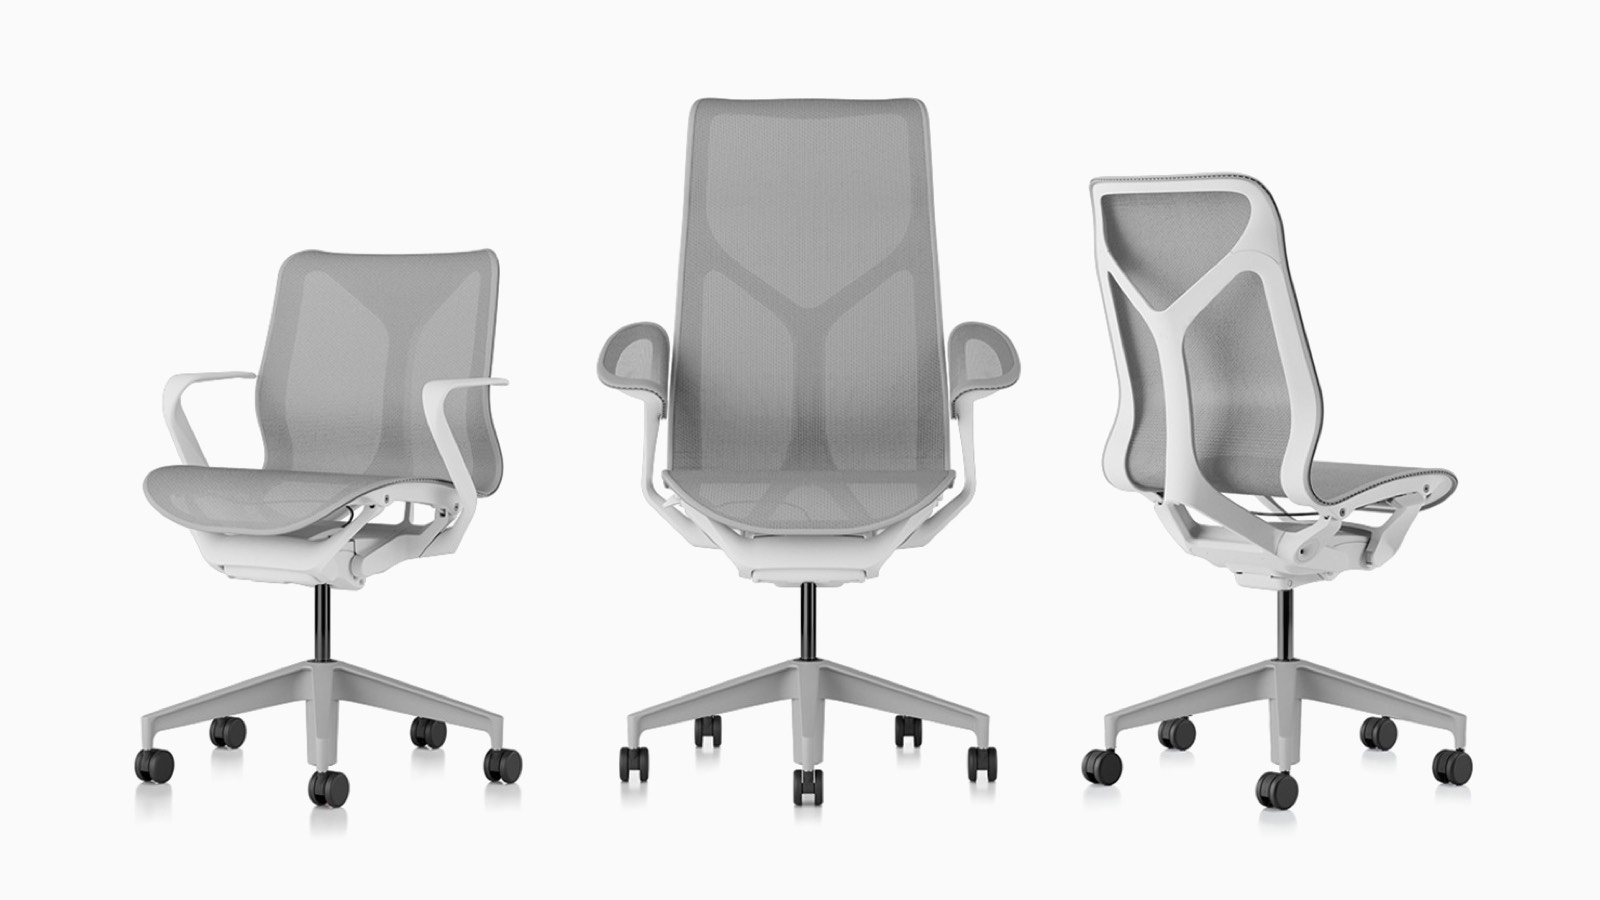 Cosm ergonomische Bürostühle mit niedriger Rückenlehne, hoher Rückenlehne und mittlerer Rückenlehne mit Untergestell und Rahmen in Studio White und Aufhängematerial in Mineral hellgrau.